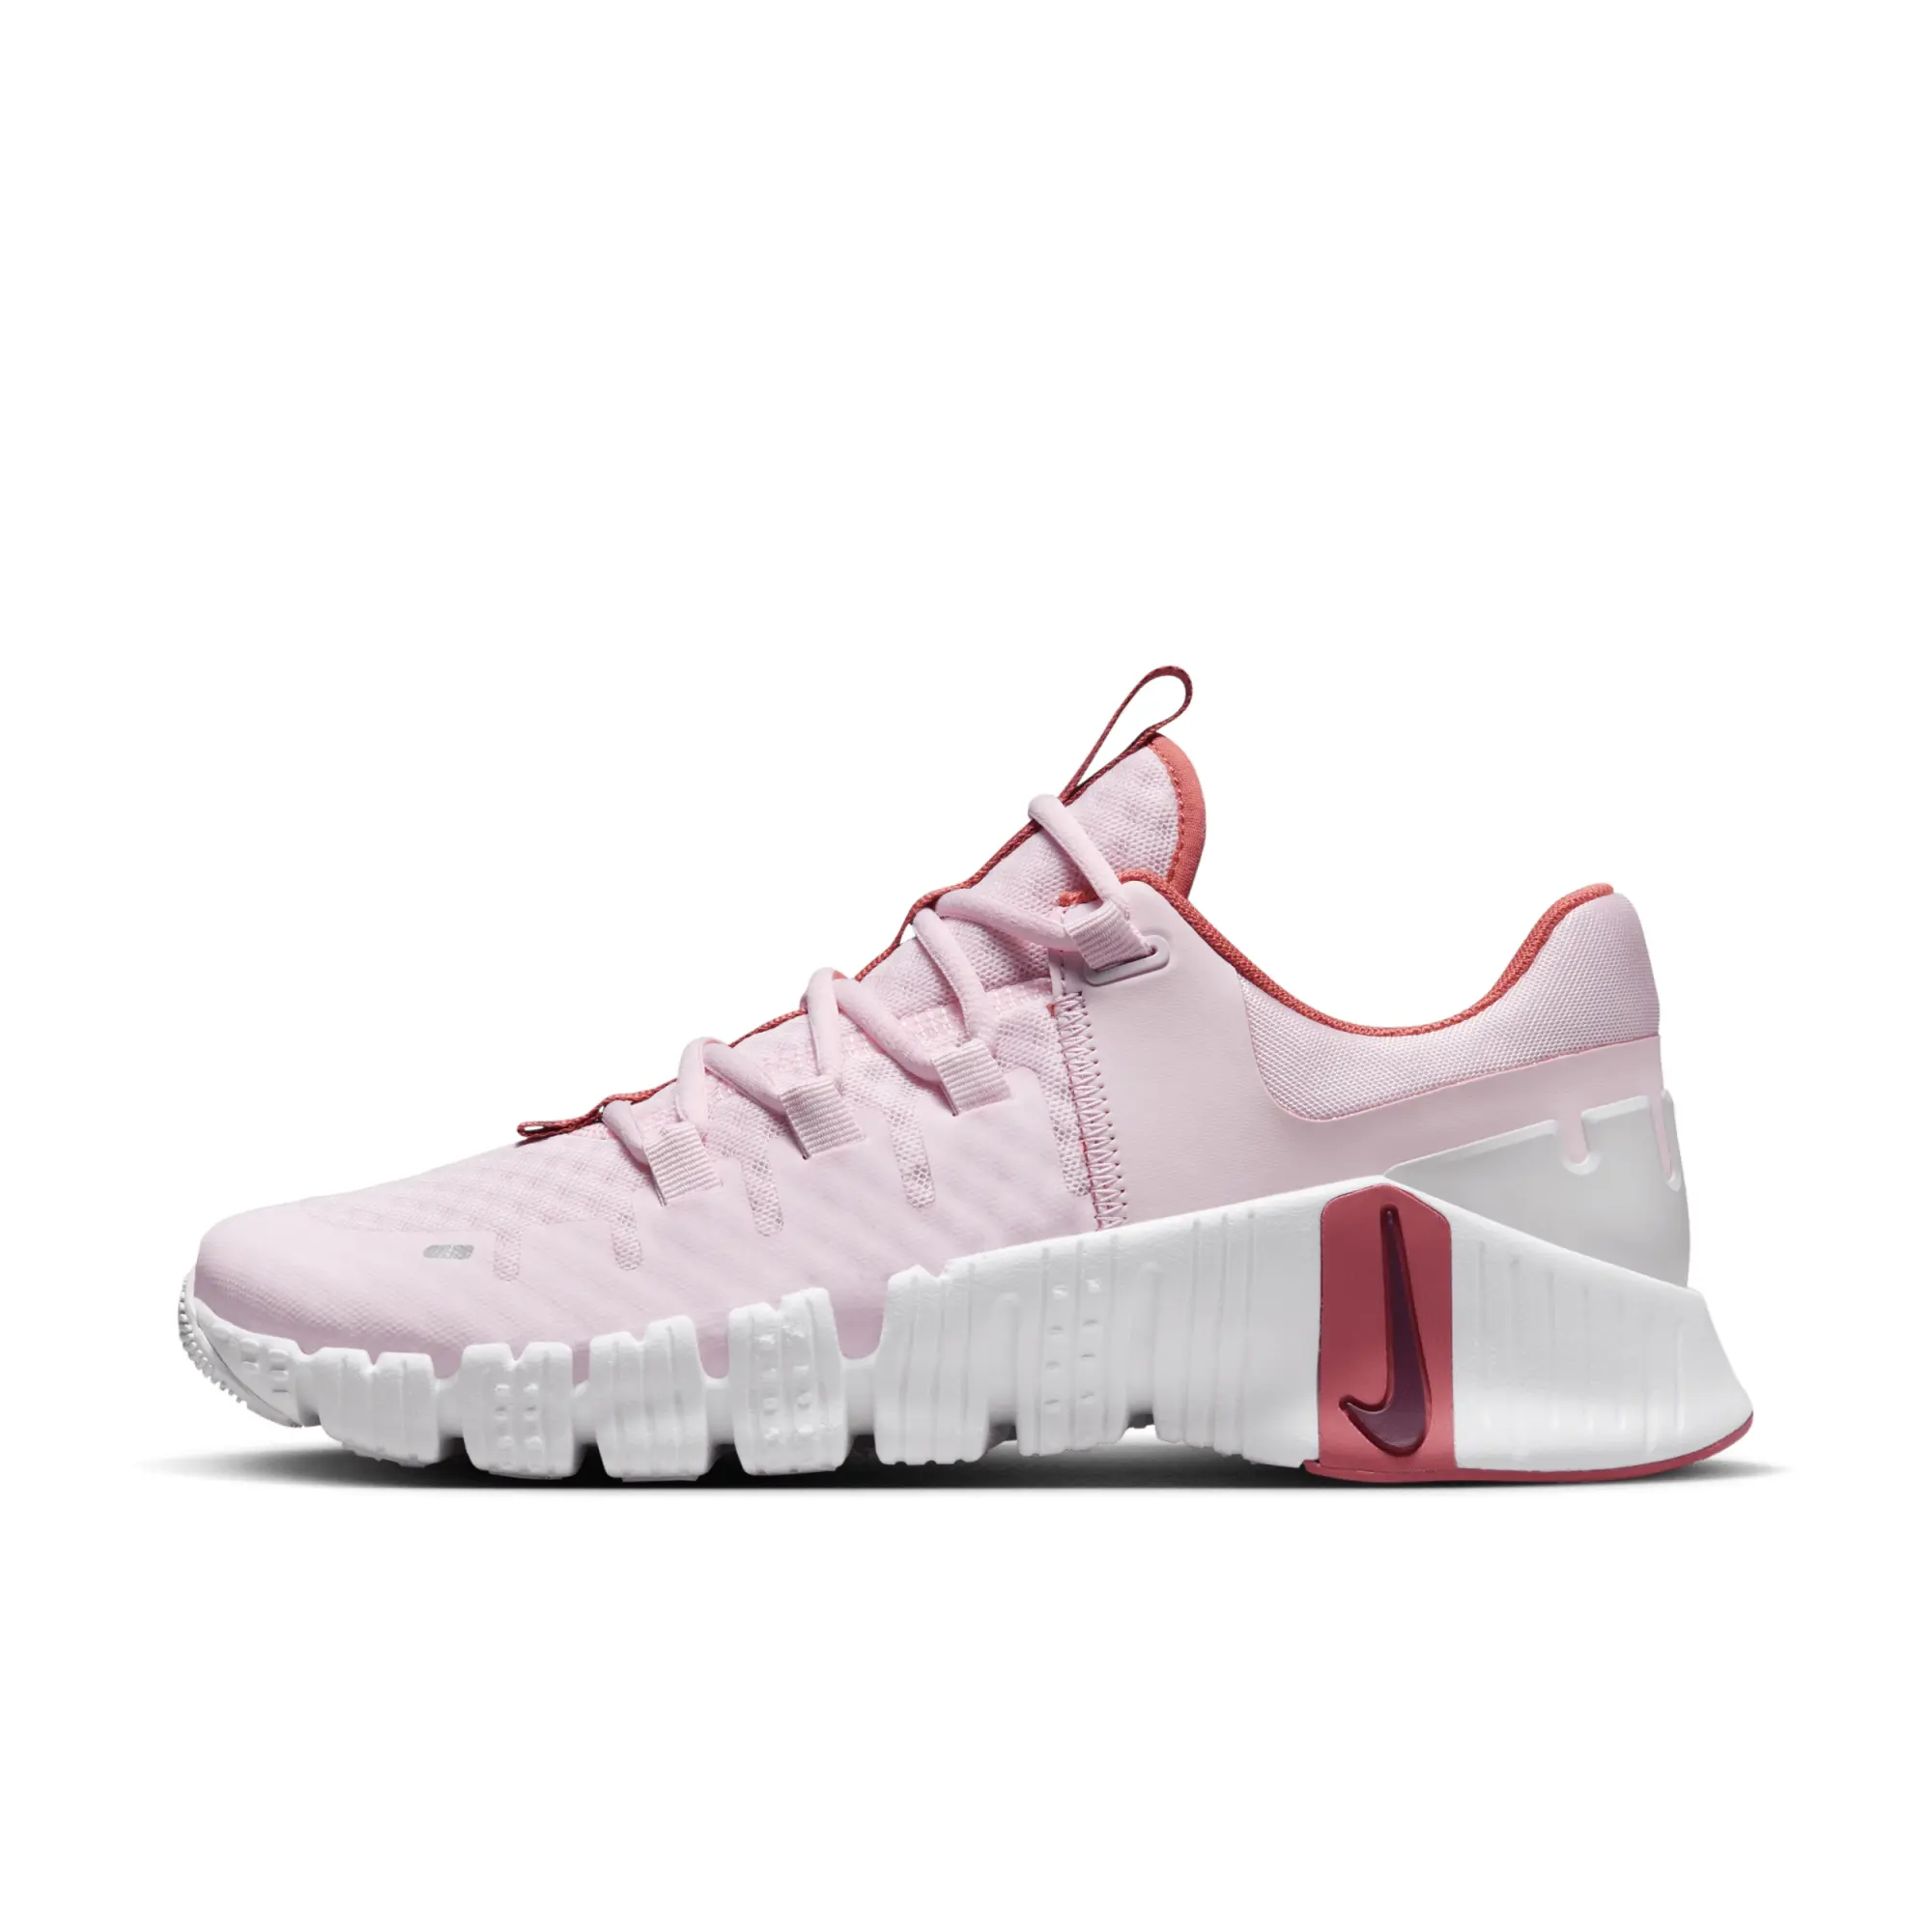 NIKE Free Metcon 5 Shoes - Pink Foam/Adobe/Platinum Tint/Dark Team Red - UK 8